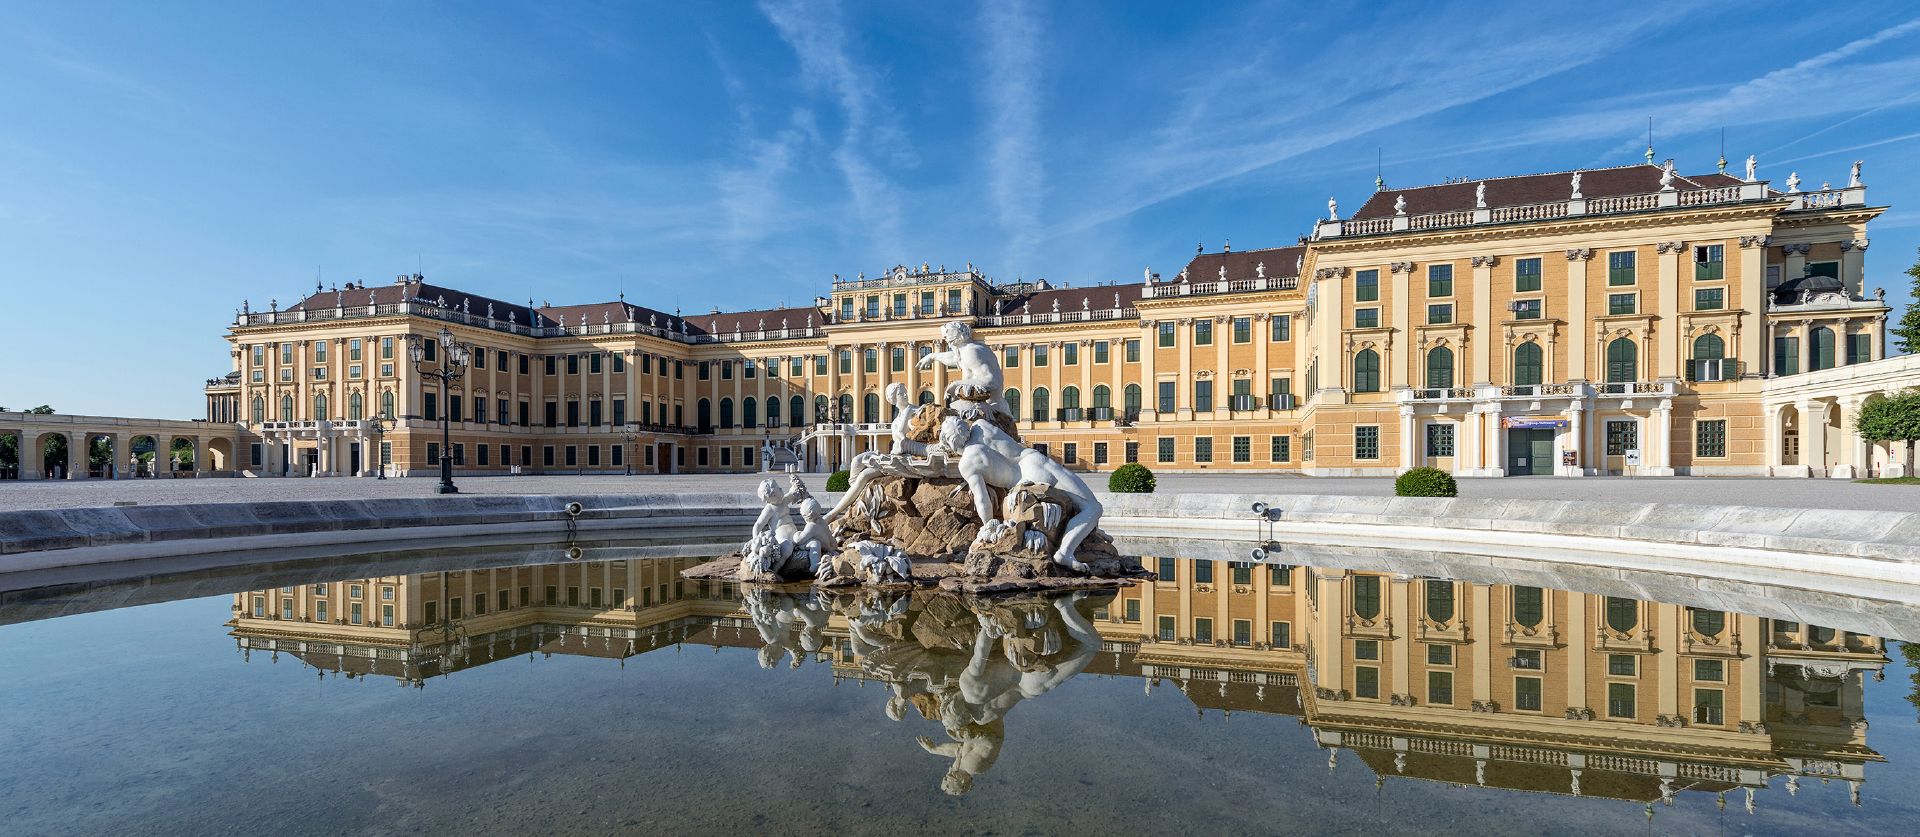 Hành trình 12 ngày khám phá Đông Âu - Cung điện Schonbrunn - Vienna